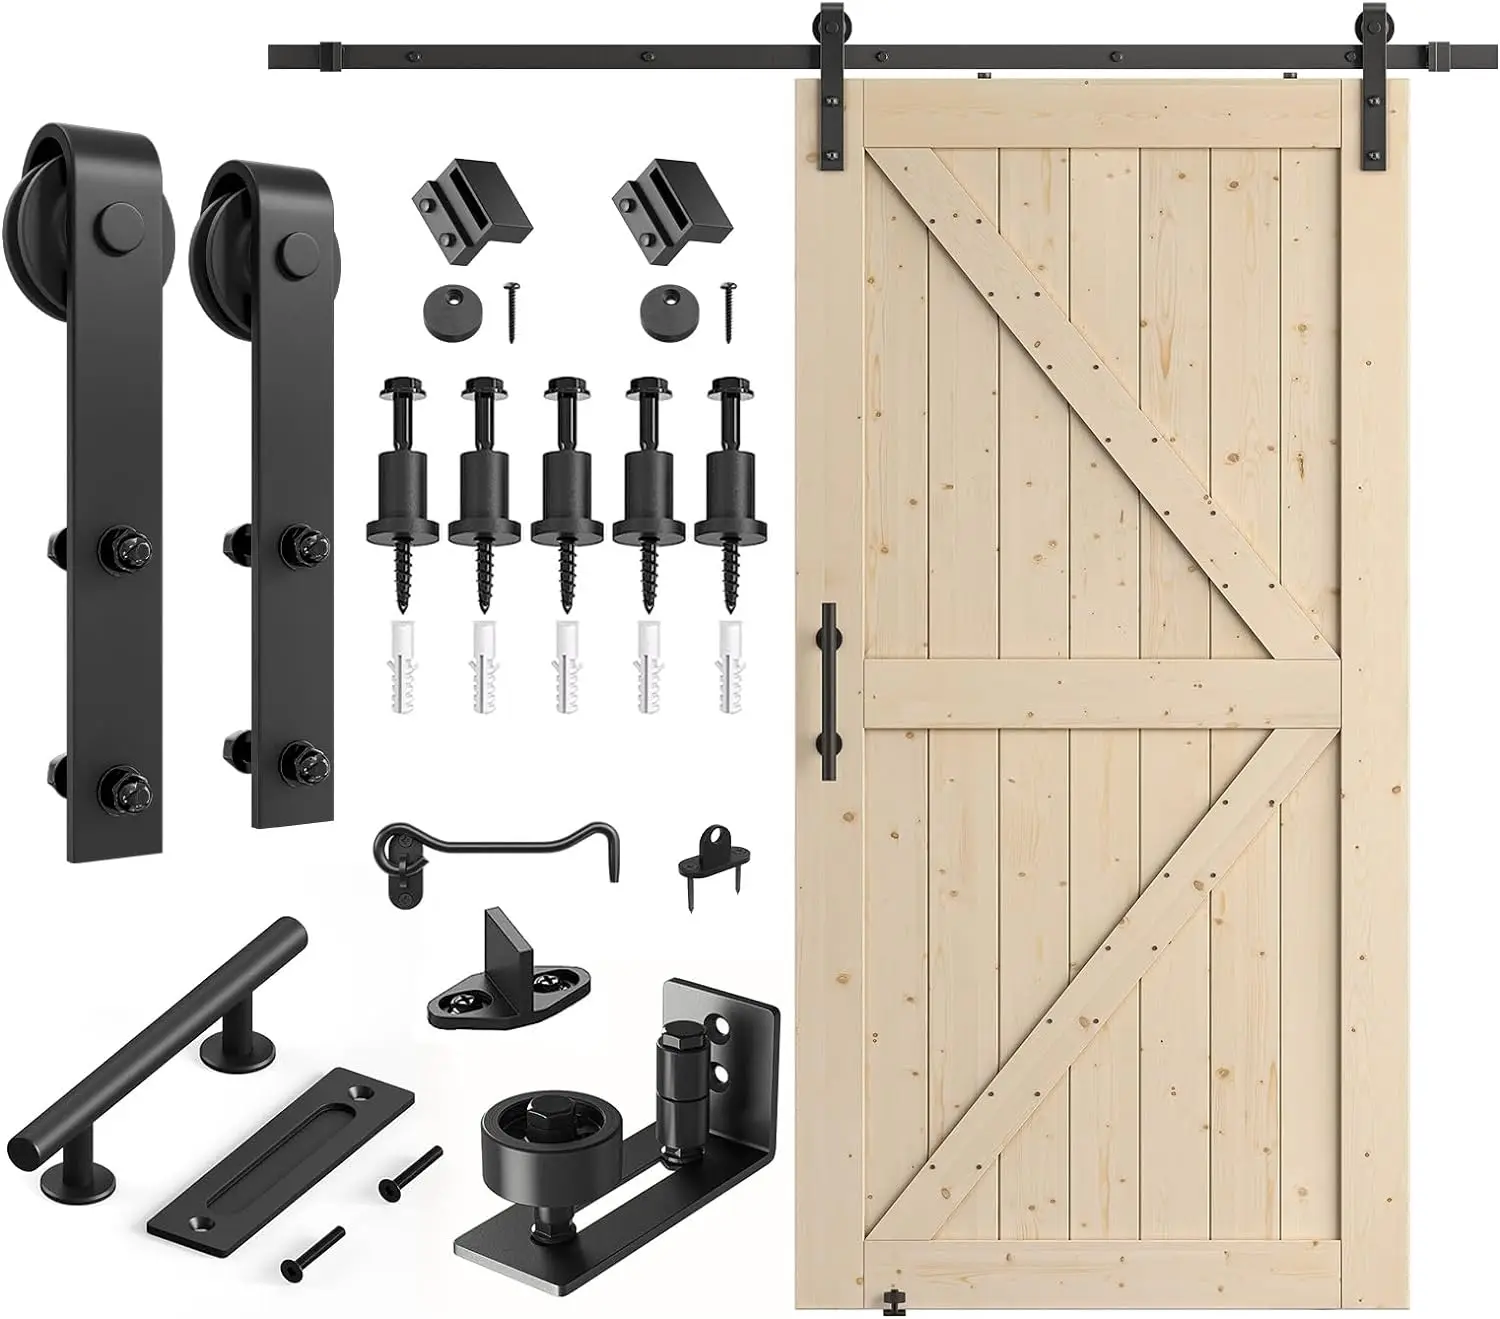 

SMARTSTANDARD 42in x 84in Sliding Barn Door with 7ft Barn Door Hardware Kit Included, Unfinished Solid Spruce Wood Door